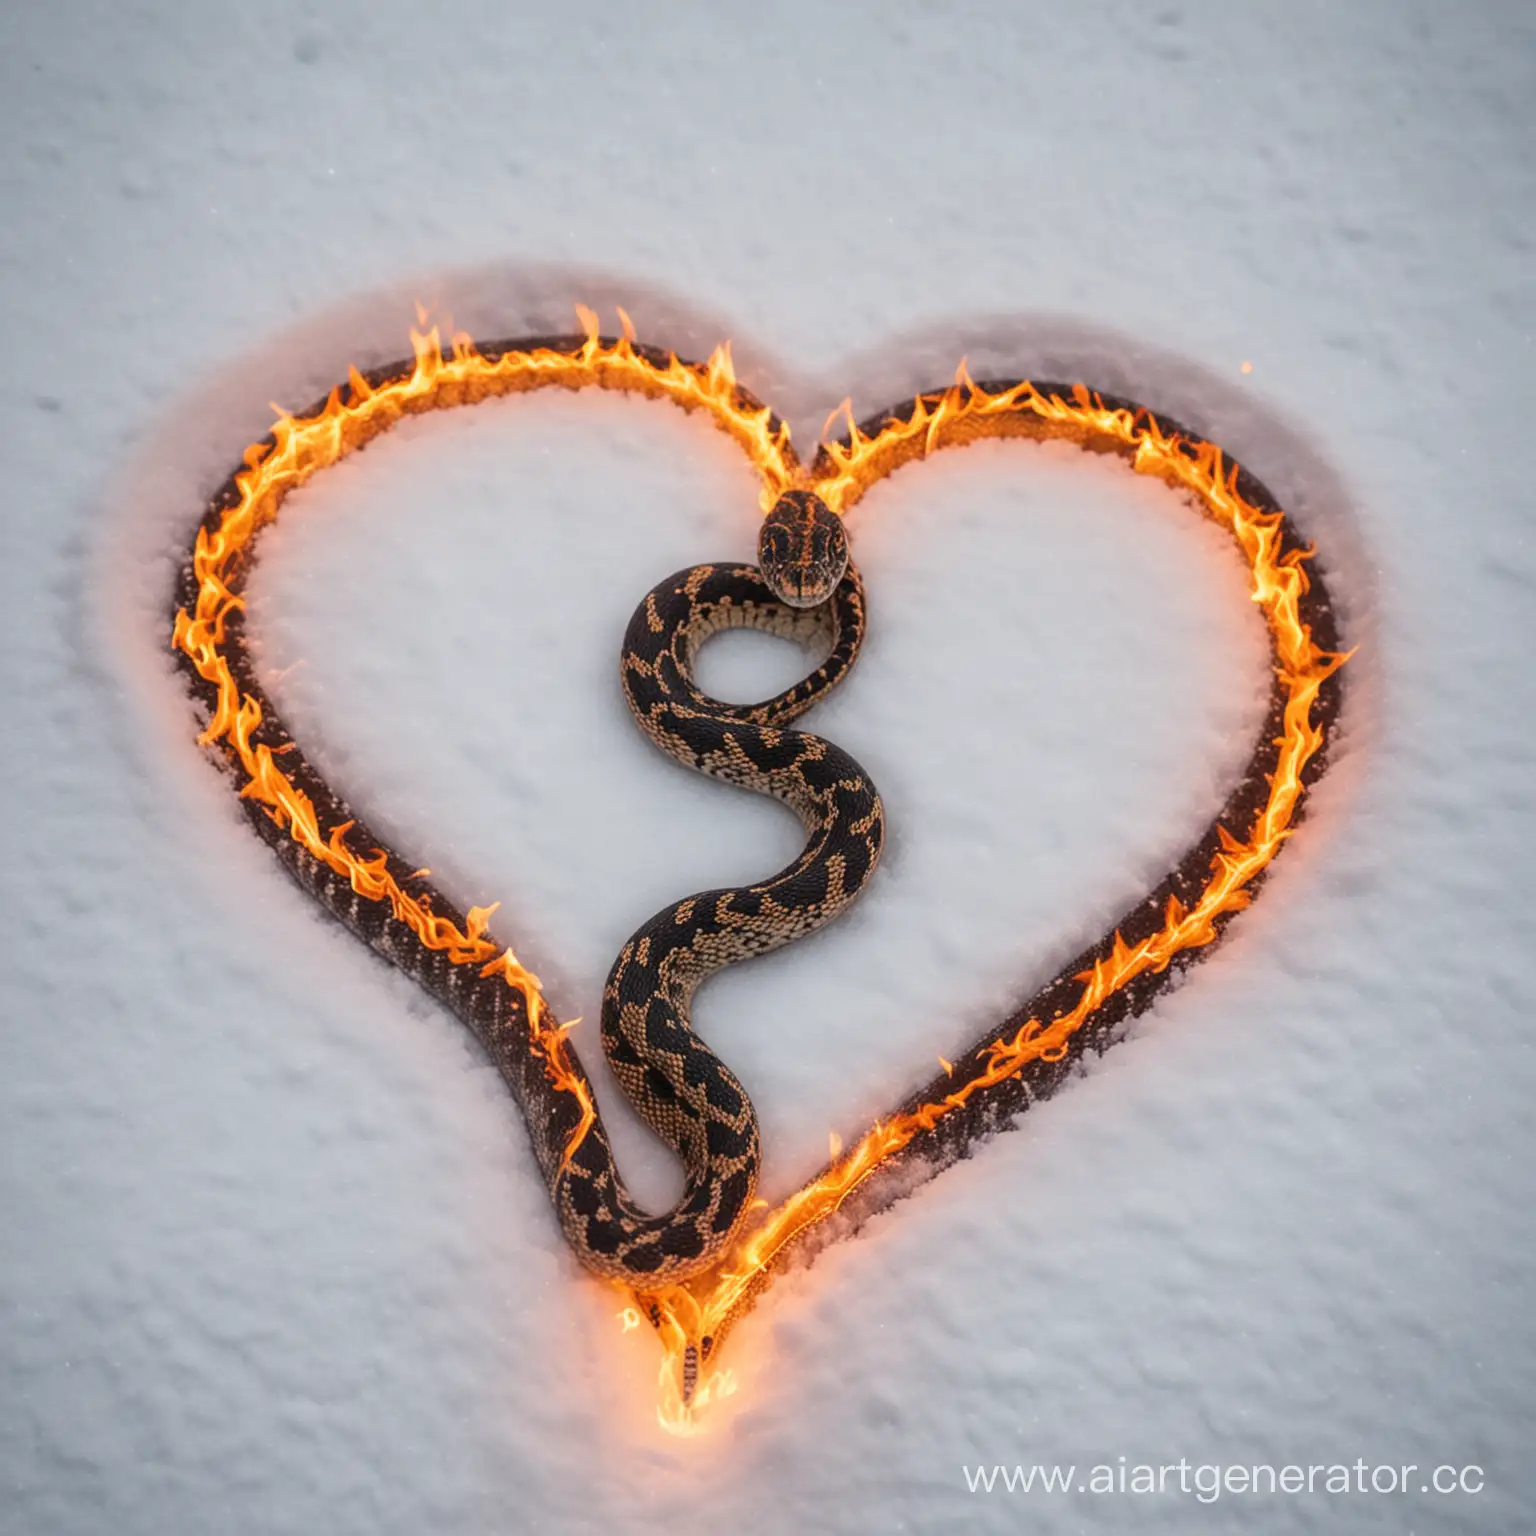 Fiery-HeartShaped-Snake-on-Snowy-Landscape